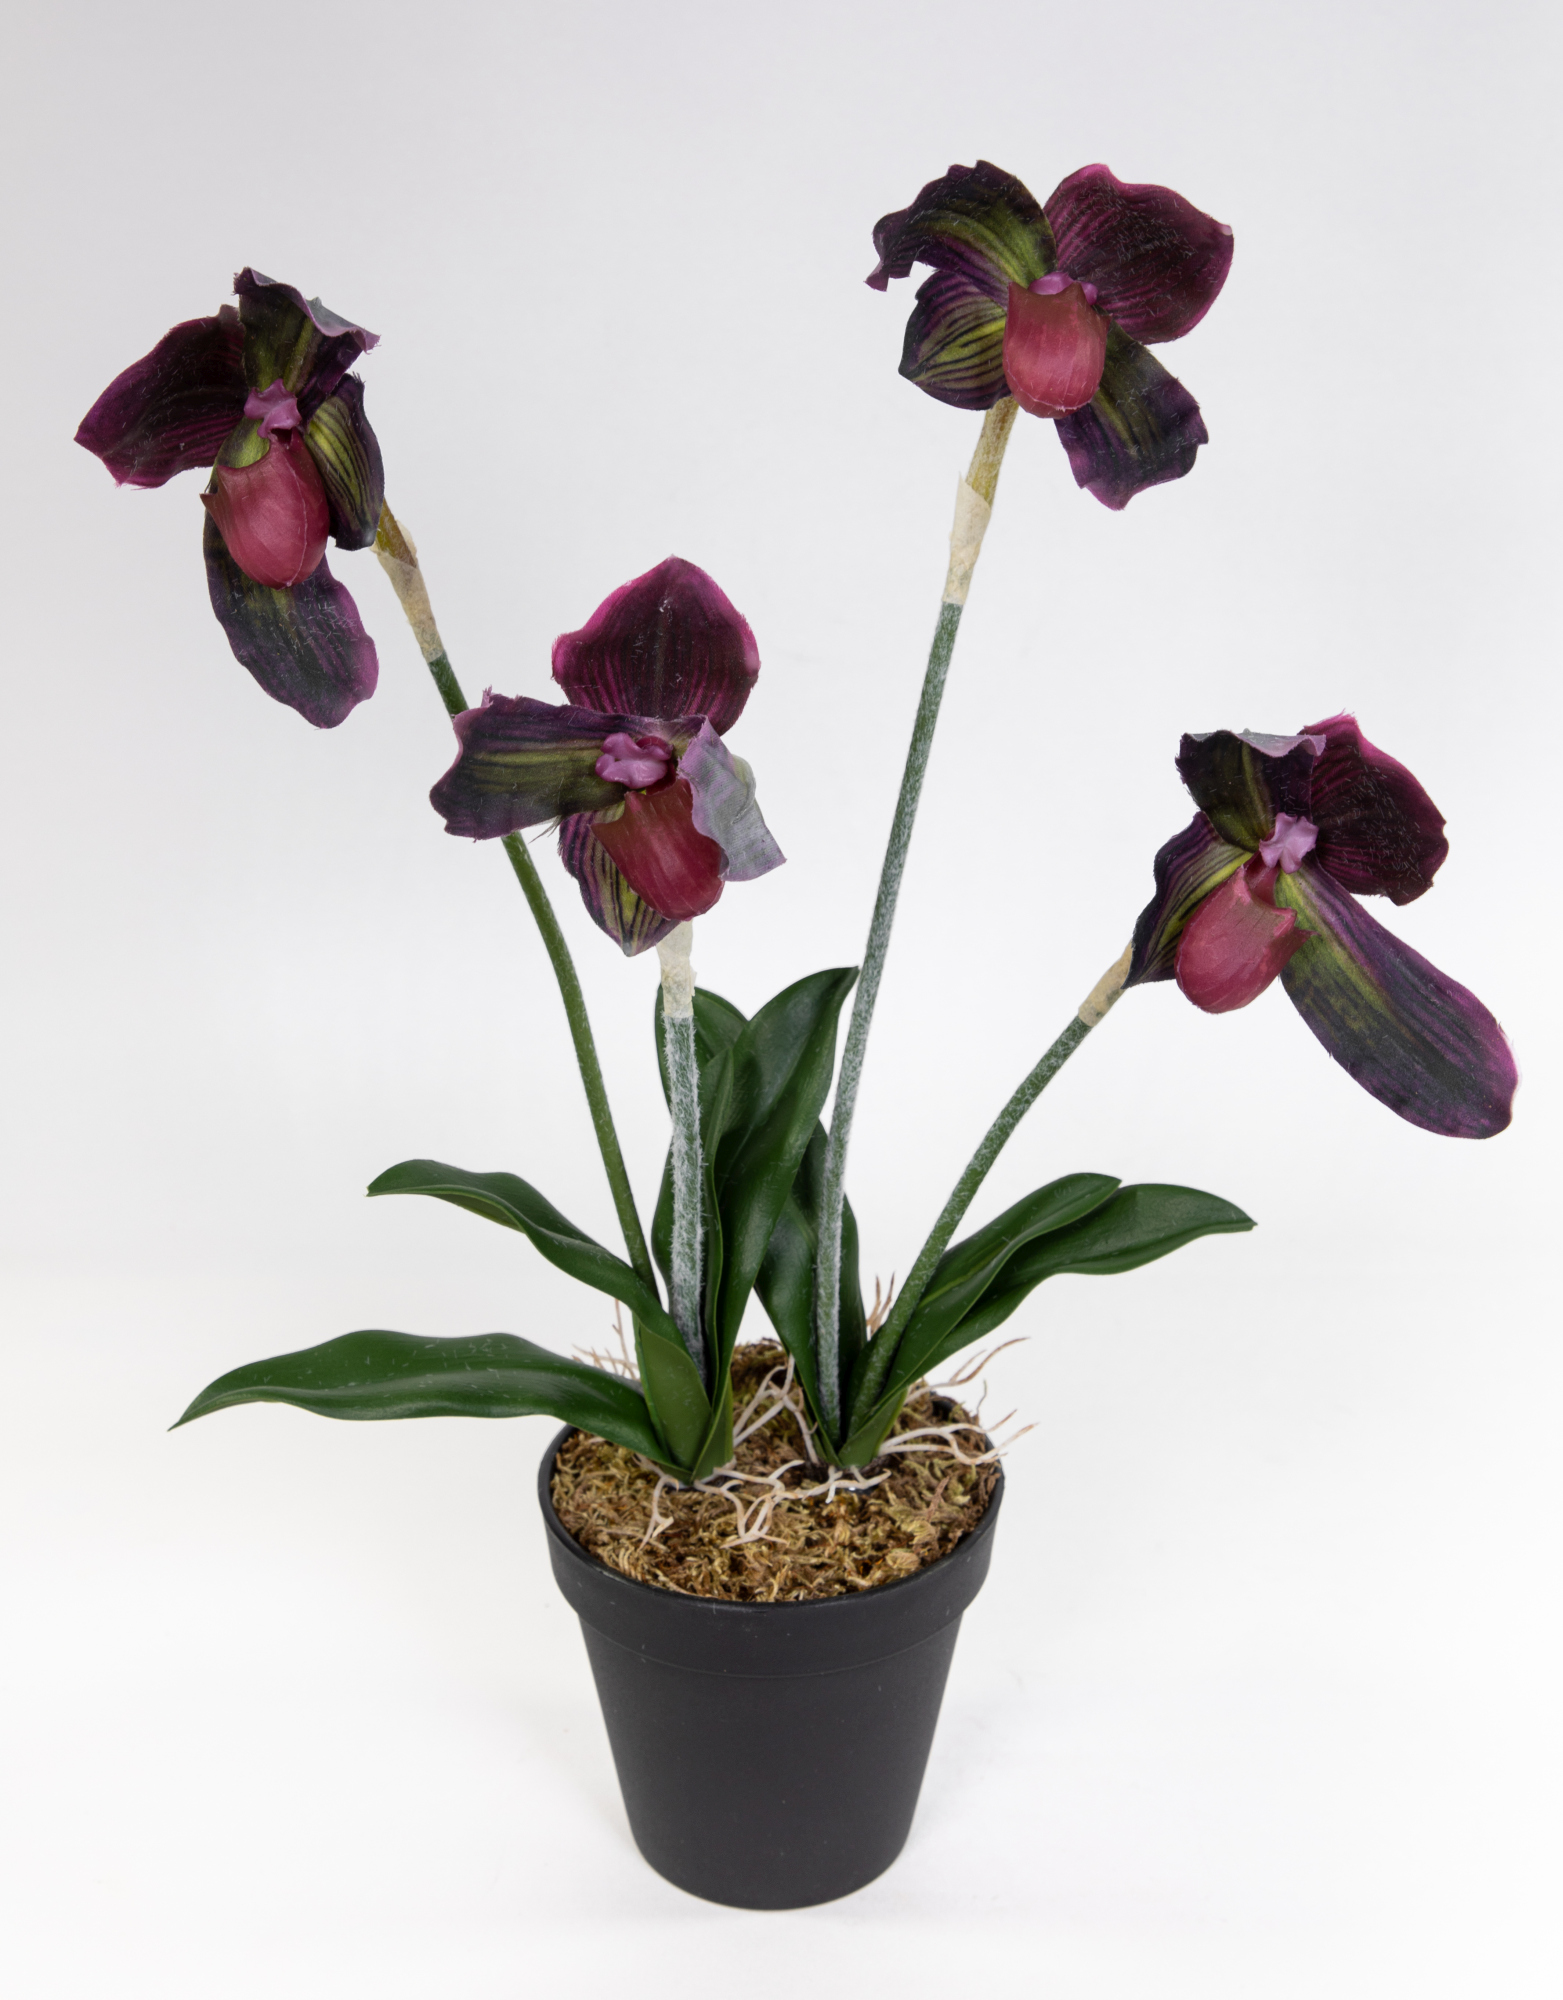 Orchidee Frauenschuh 42cm bordeaux FT künstliche Blumen Pflanzen Kunstpflanzen Kunstblumen